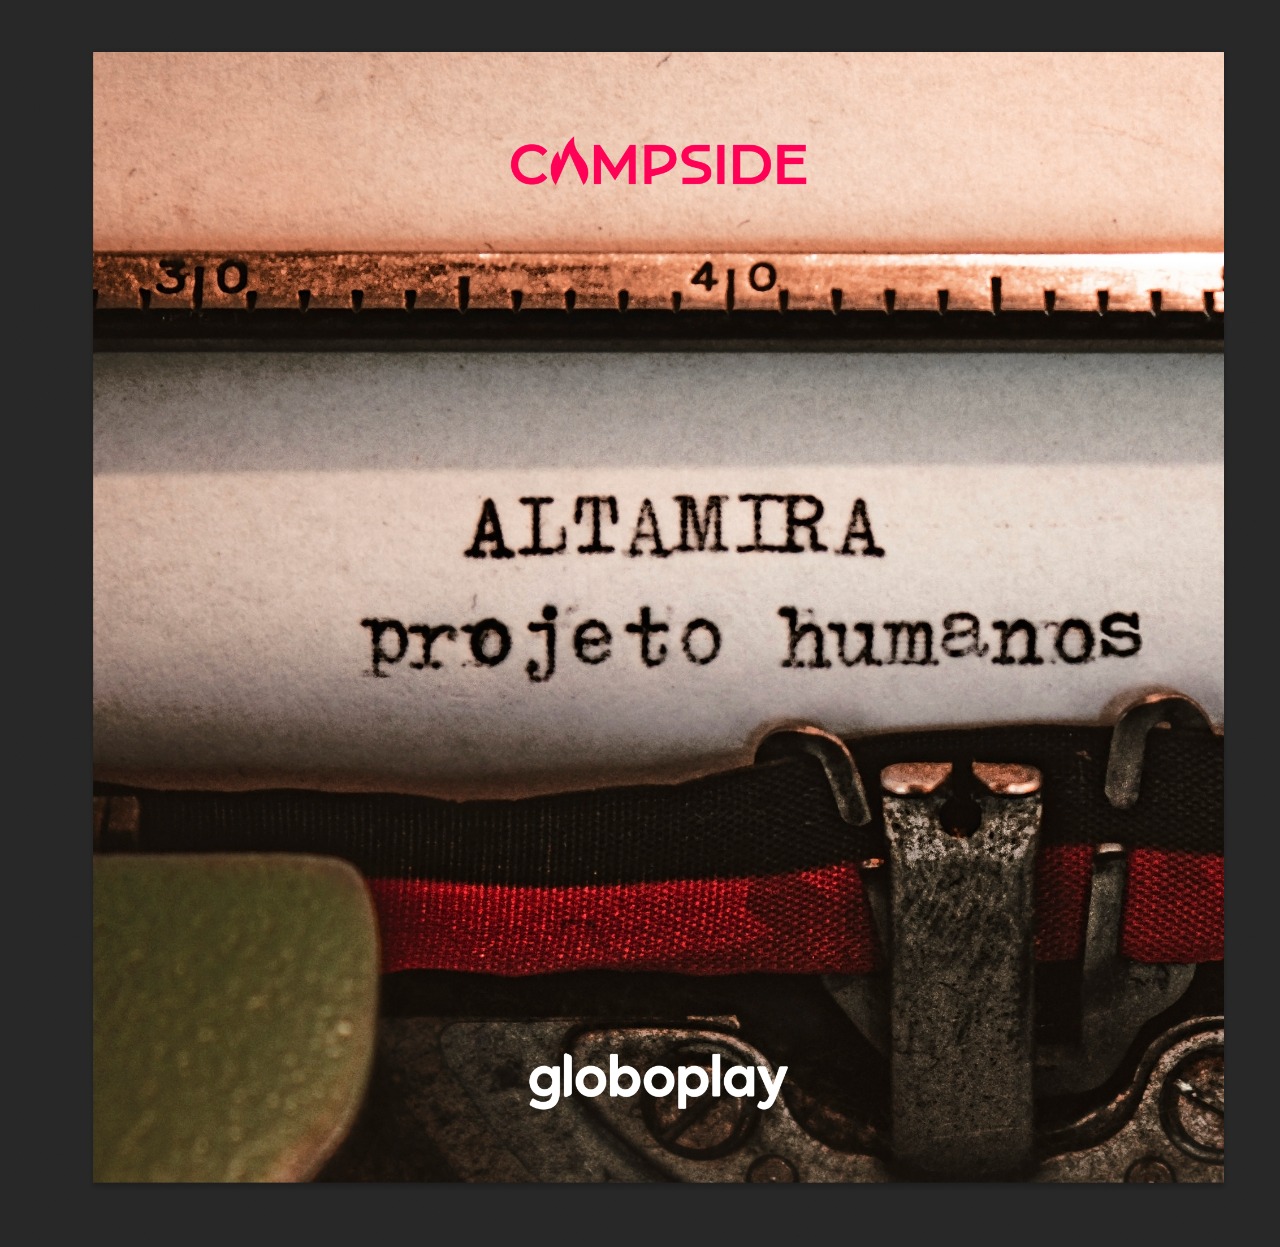 Altamira já está disponível no Globoplay e nas plataformas - Foto: Globoplay